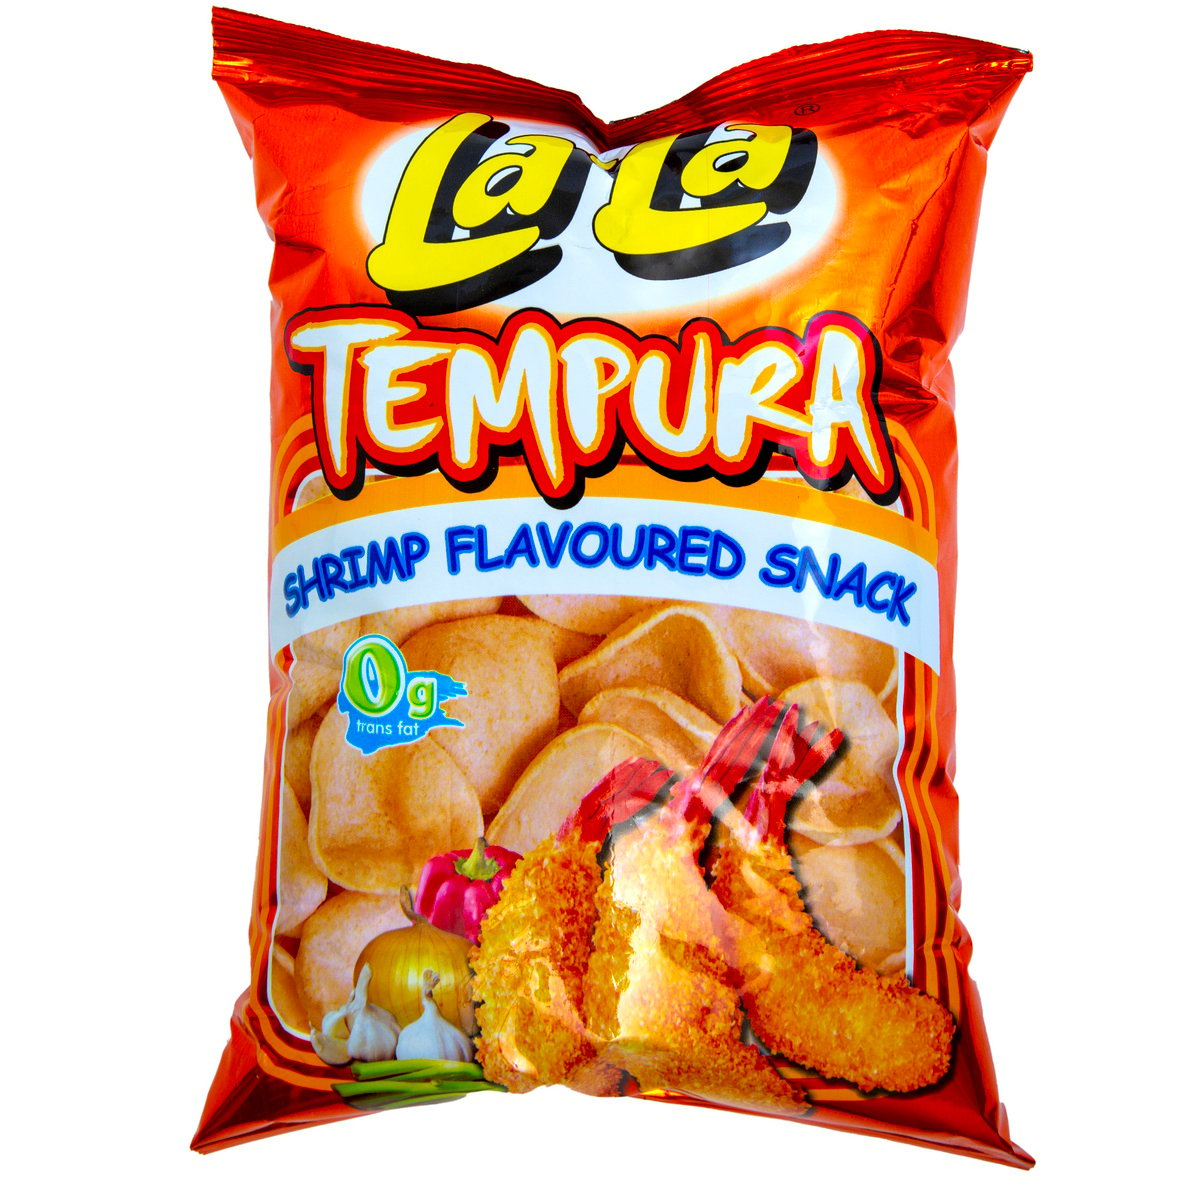 Newton La-La Tempura Shrimp Flavoured Snack 50 g